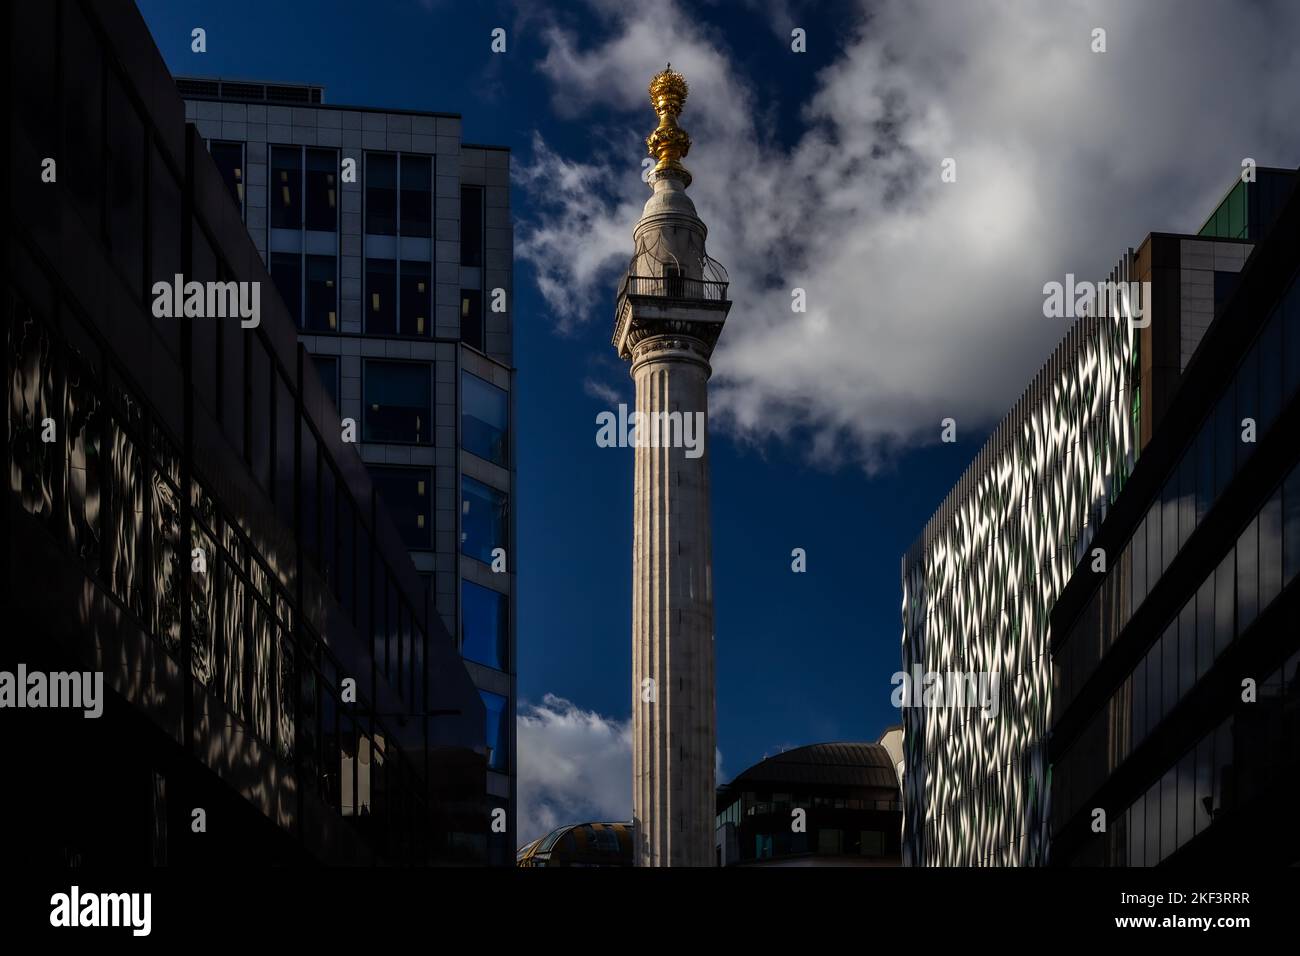 Une photo inhabituelle et spectaculaire du Monument avec de superbes reflets dans un immeuble de bureaux des deux côtés de la rue. Banque D'Images